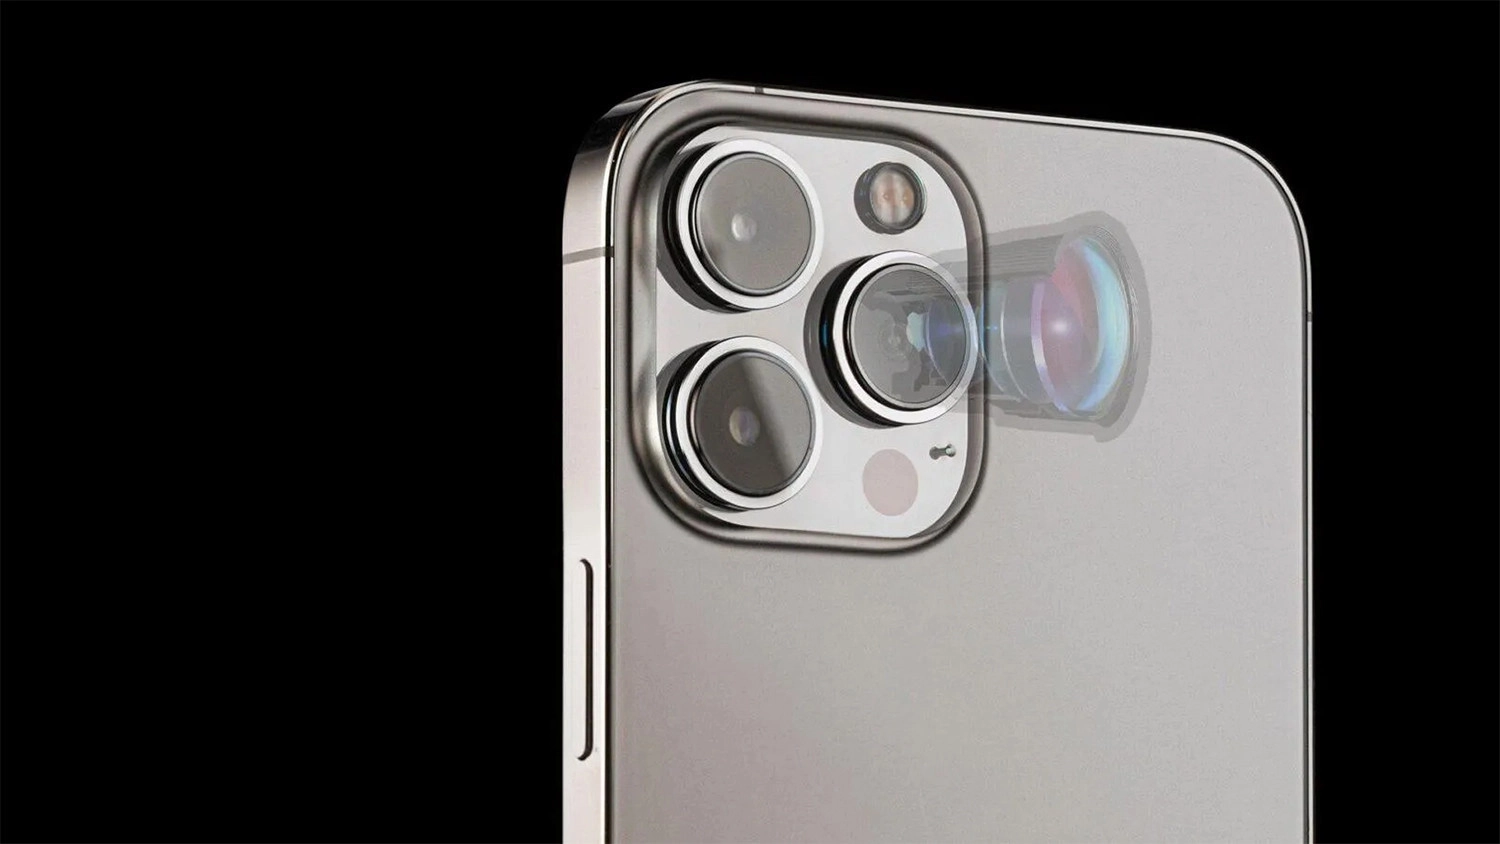 Camera chính của iPhone được dùng cảm biến gần 1 inches Sony IMX903 đắt đỏ